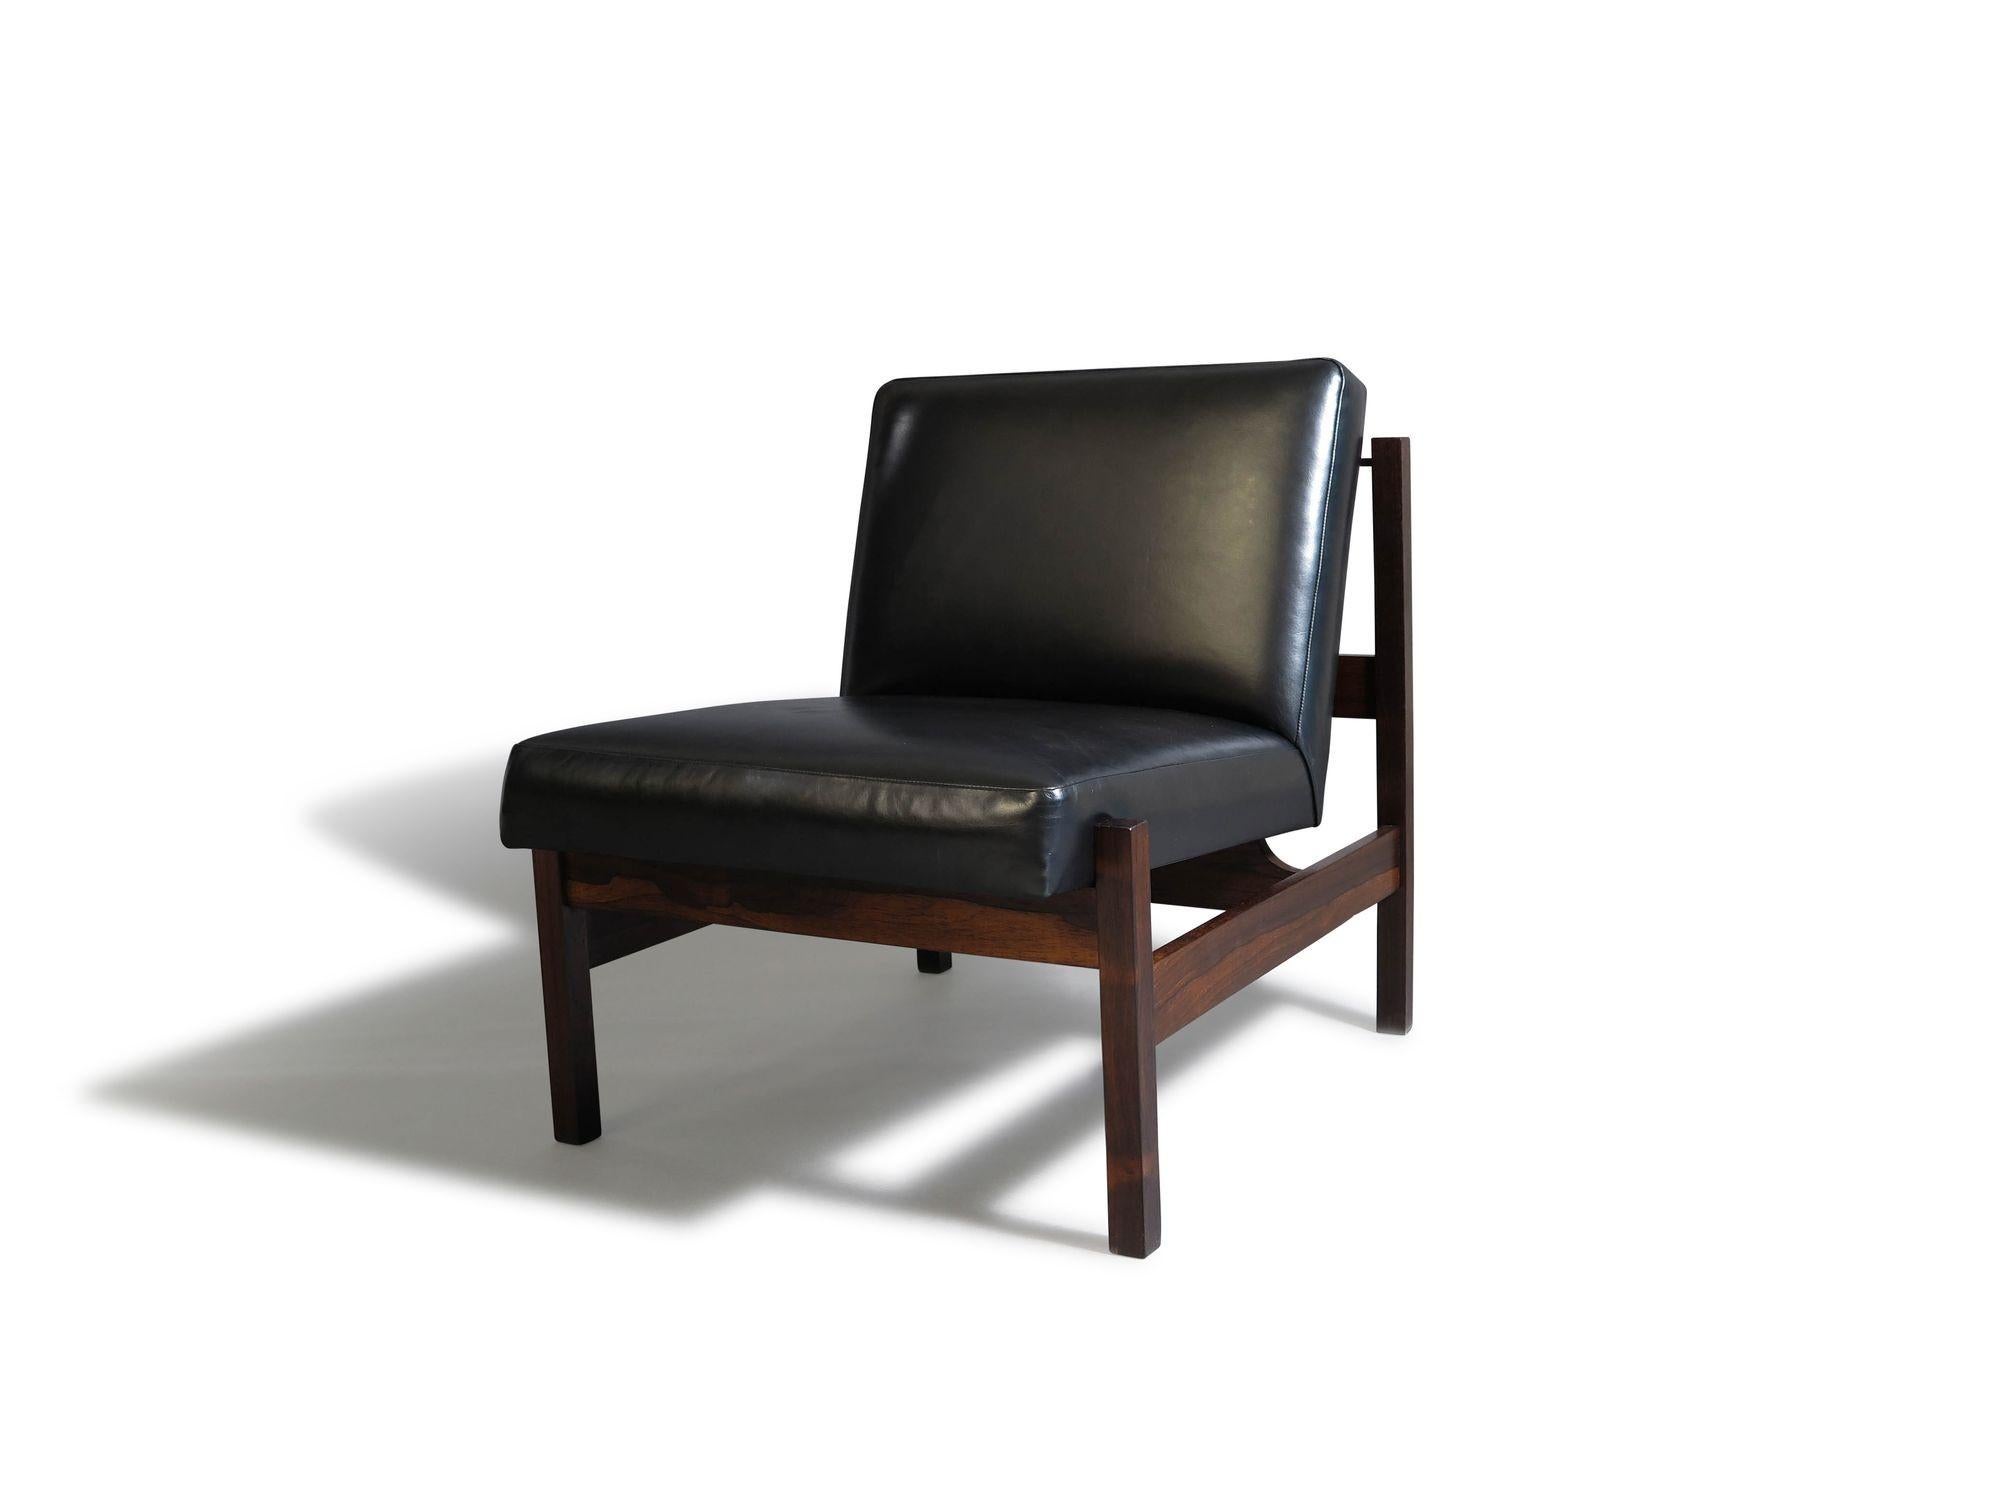 Elegantes Paar minimalistischer Loungesessel von Forma Brazil, gefertigt aus brasilianischem Palisanderholz in neuem schwarzem Anilinleder.

Messungen
B 24,50'' x T 30'' x H 28,25''
Sitzhöhe 16.25''